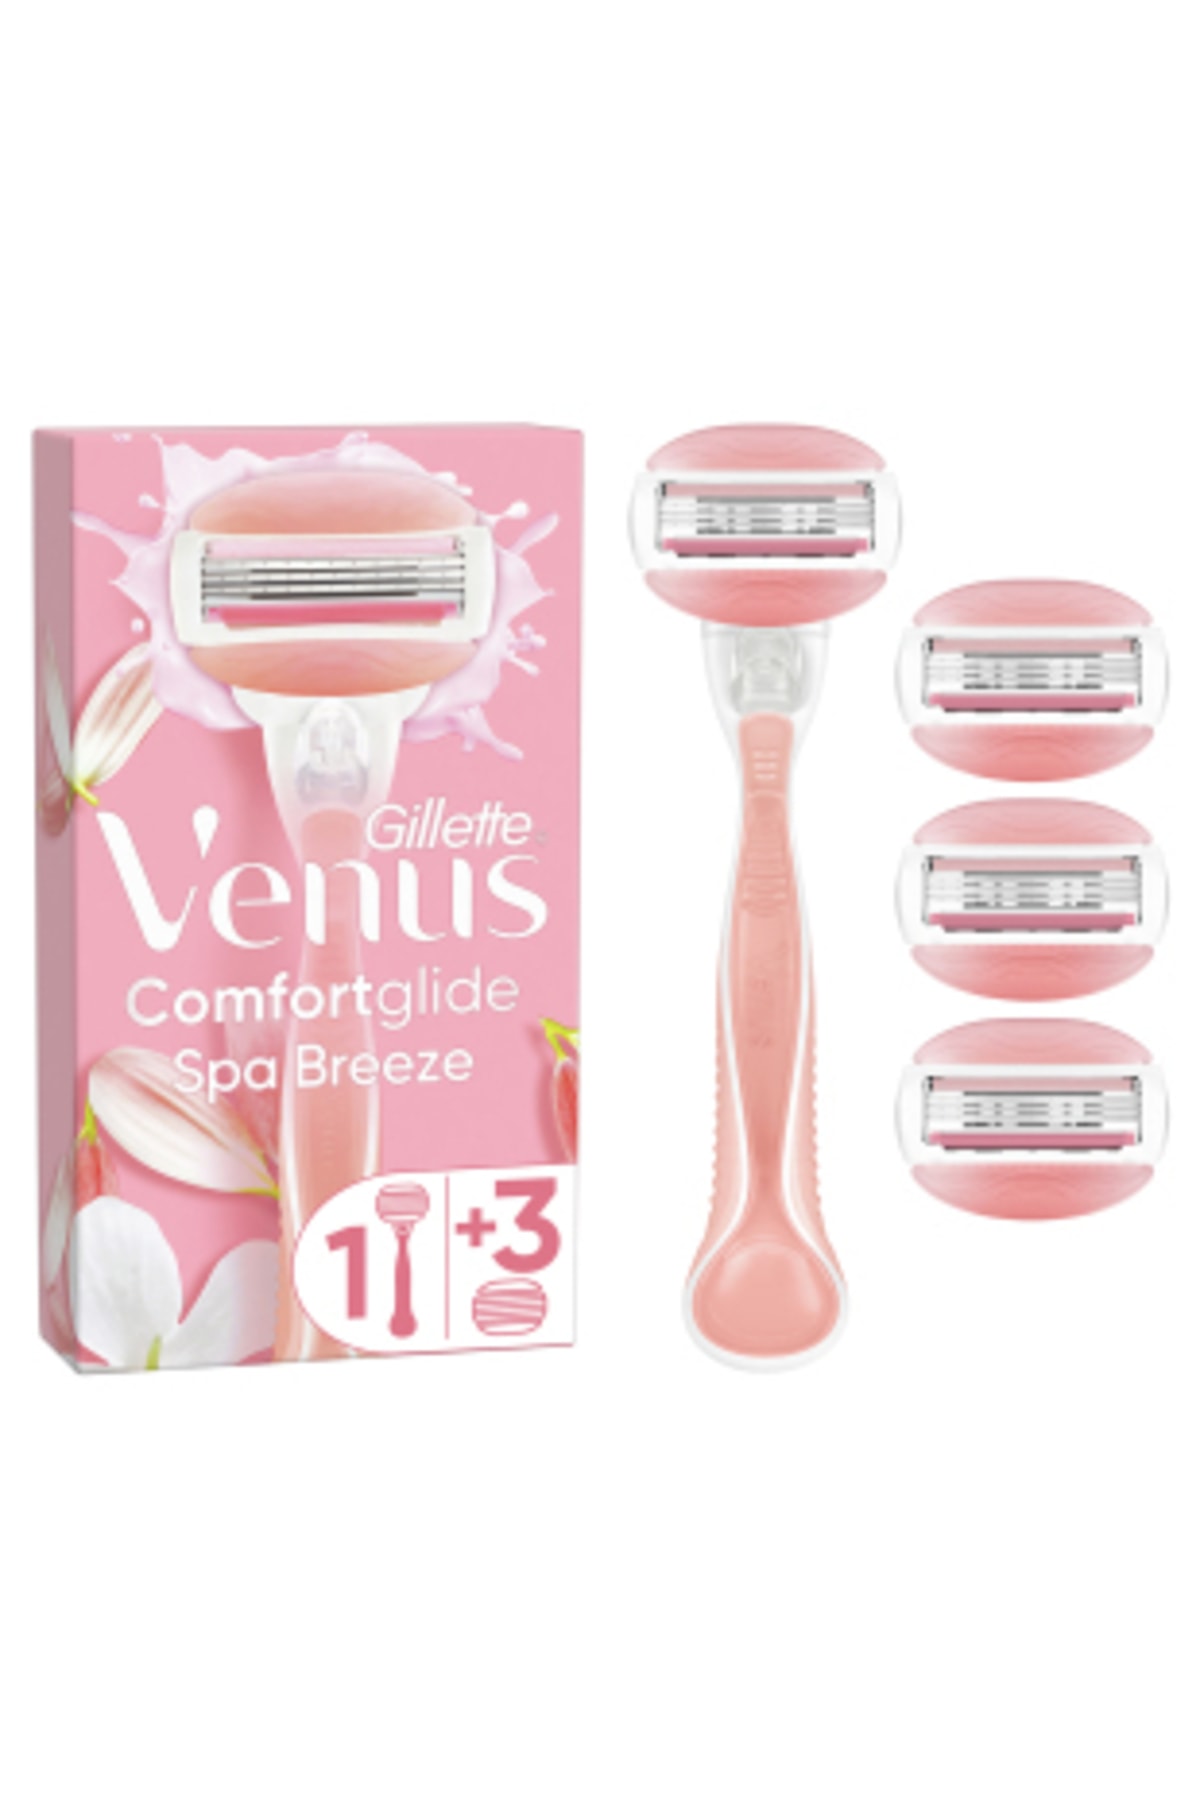 Gillette Venus Venüs Comfortglide Spa Breeze Kadın Tıraş Makinesi 4 Yedek Tıraş Bıçağı